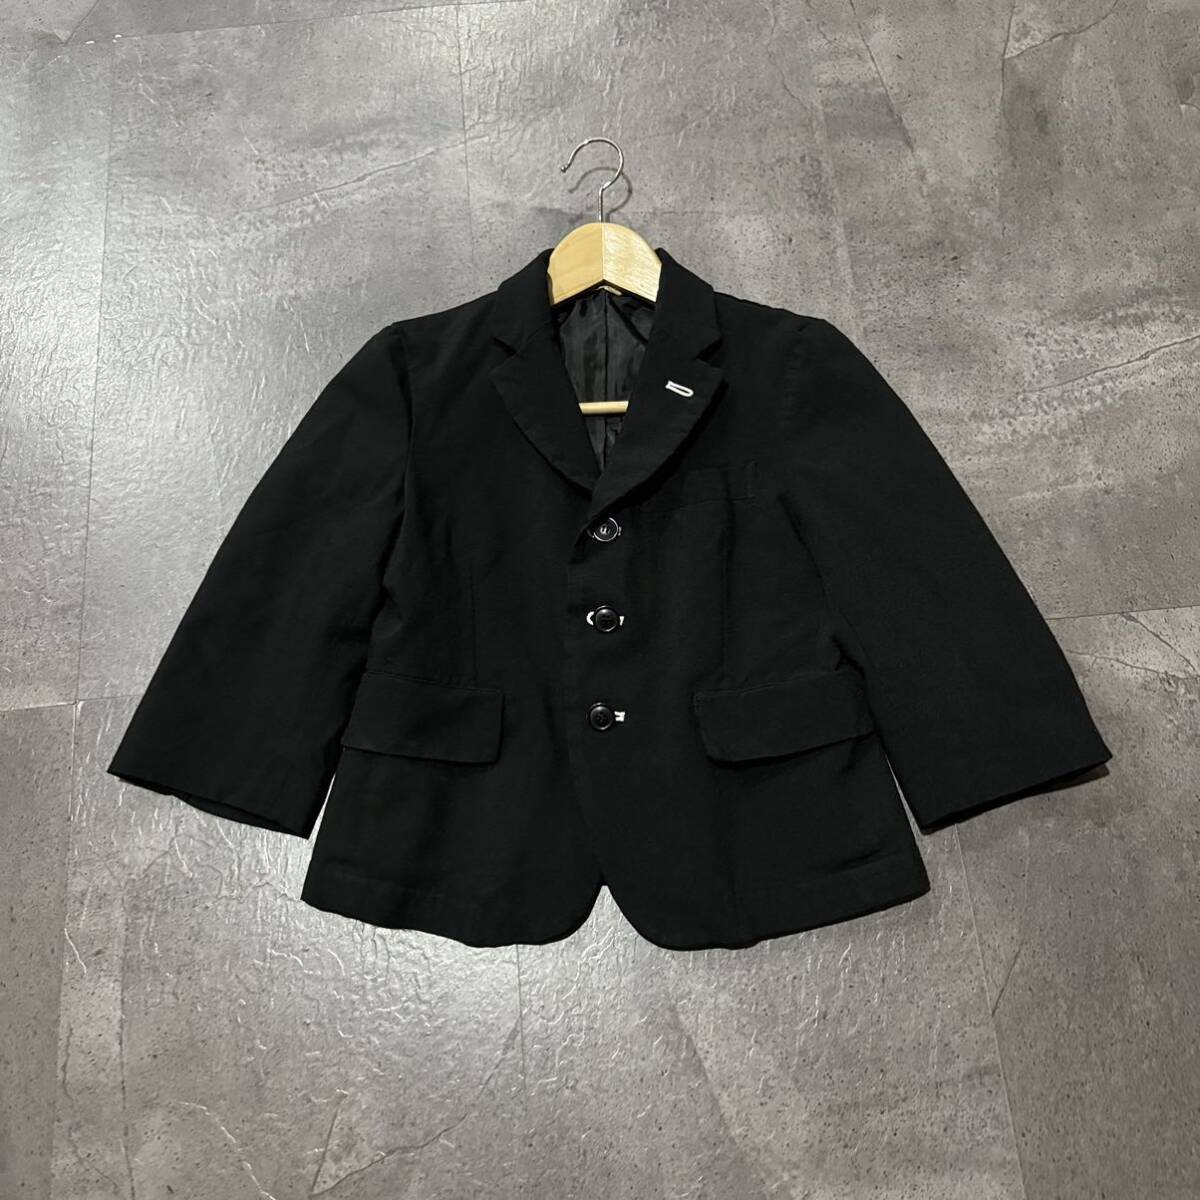 II ☆ 高級ラグジュアリー服 '日本製' COMME des GARCONS BLACK コムデギャルソン AD2014 ジャケット 羽織り size:XXS レディース アウターの画像2